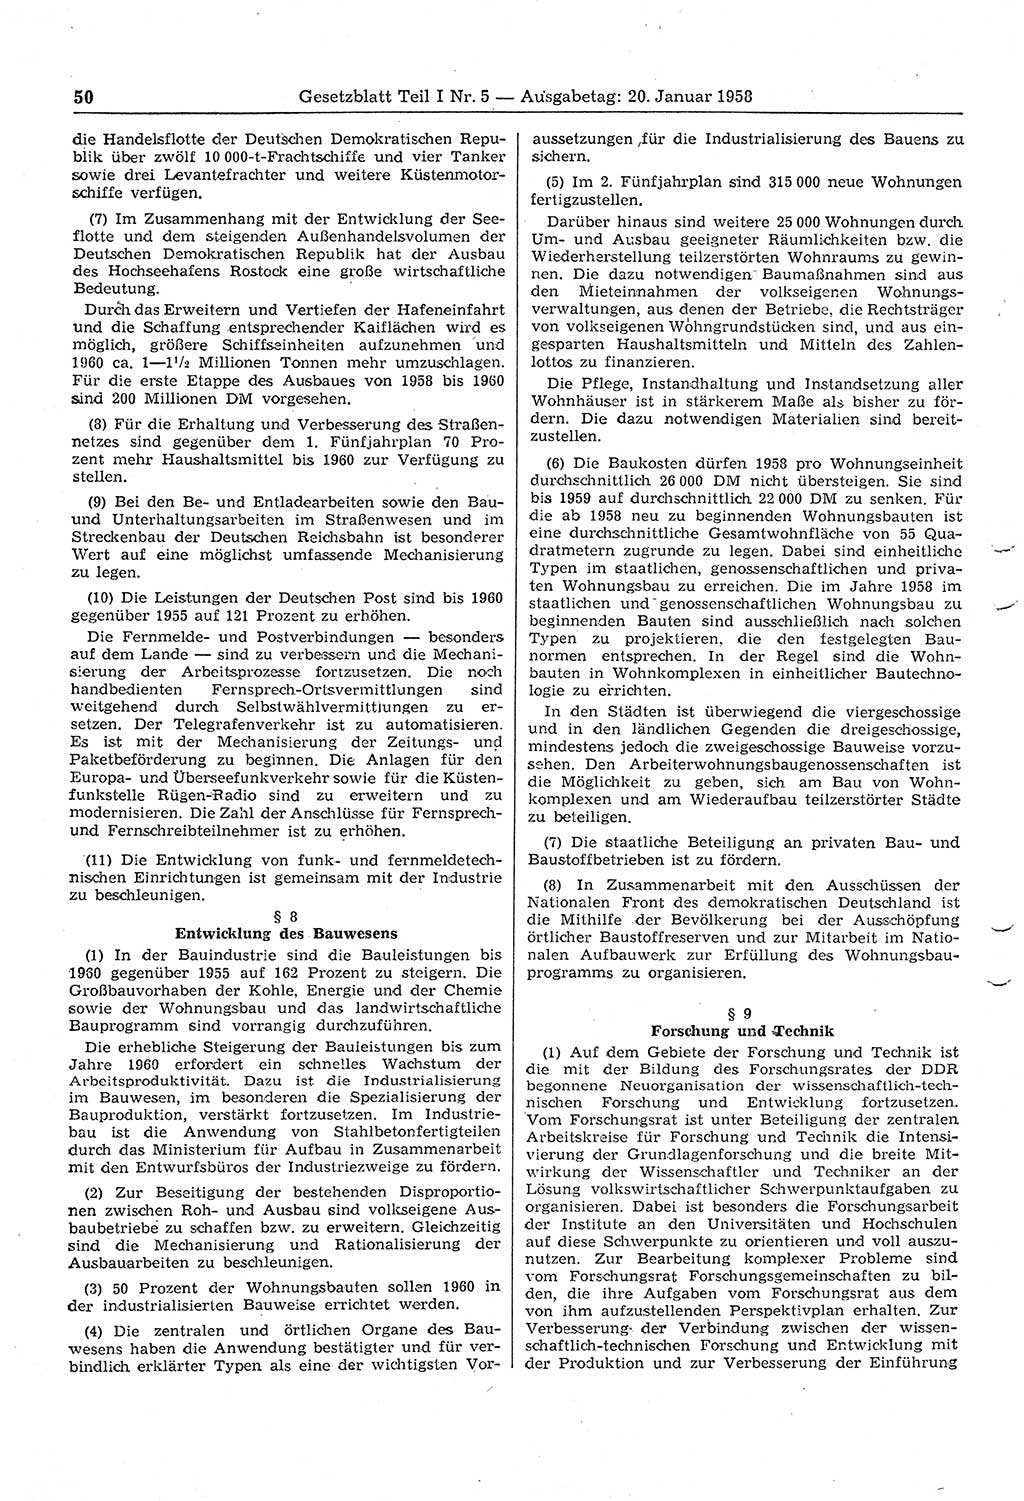 Gesetzblatt (GBl.) der Deutschen Demokratischen Republik (DDR) Teil Ⅰ 1958, Seite 50 (GBl. DDR Ⅰ 1958, S. 50)